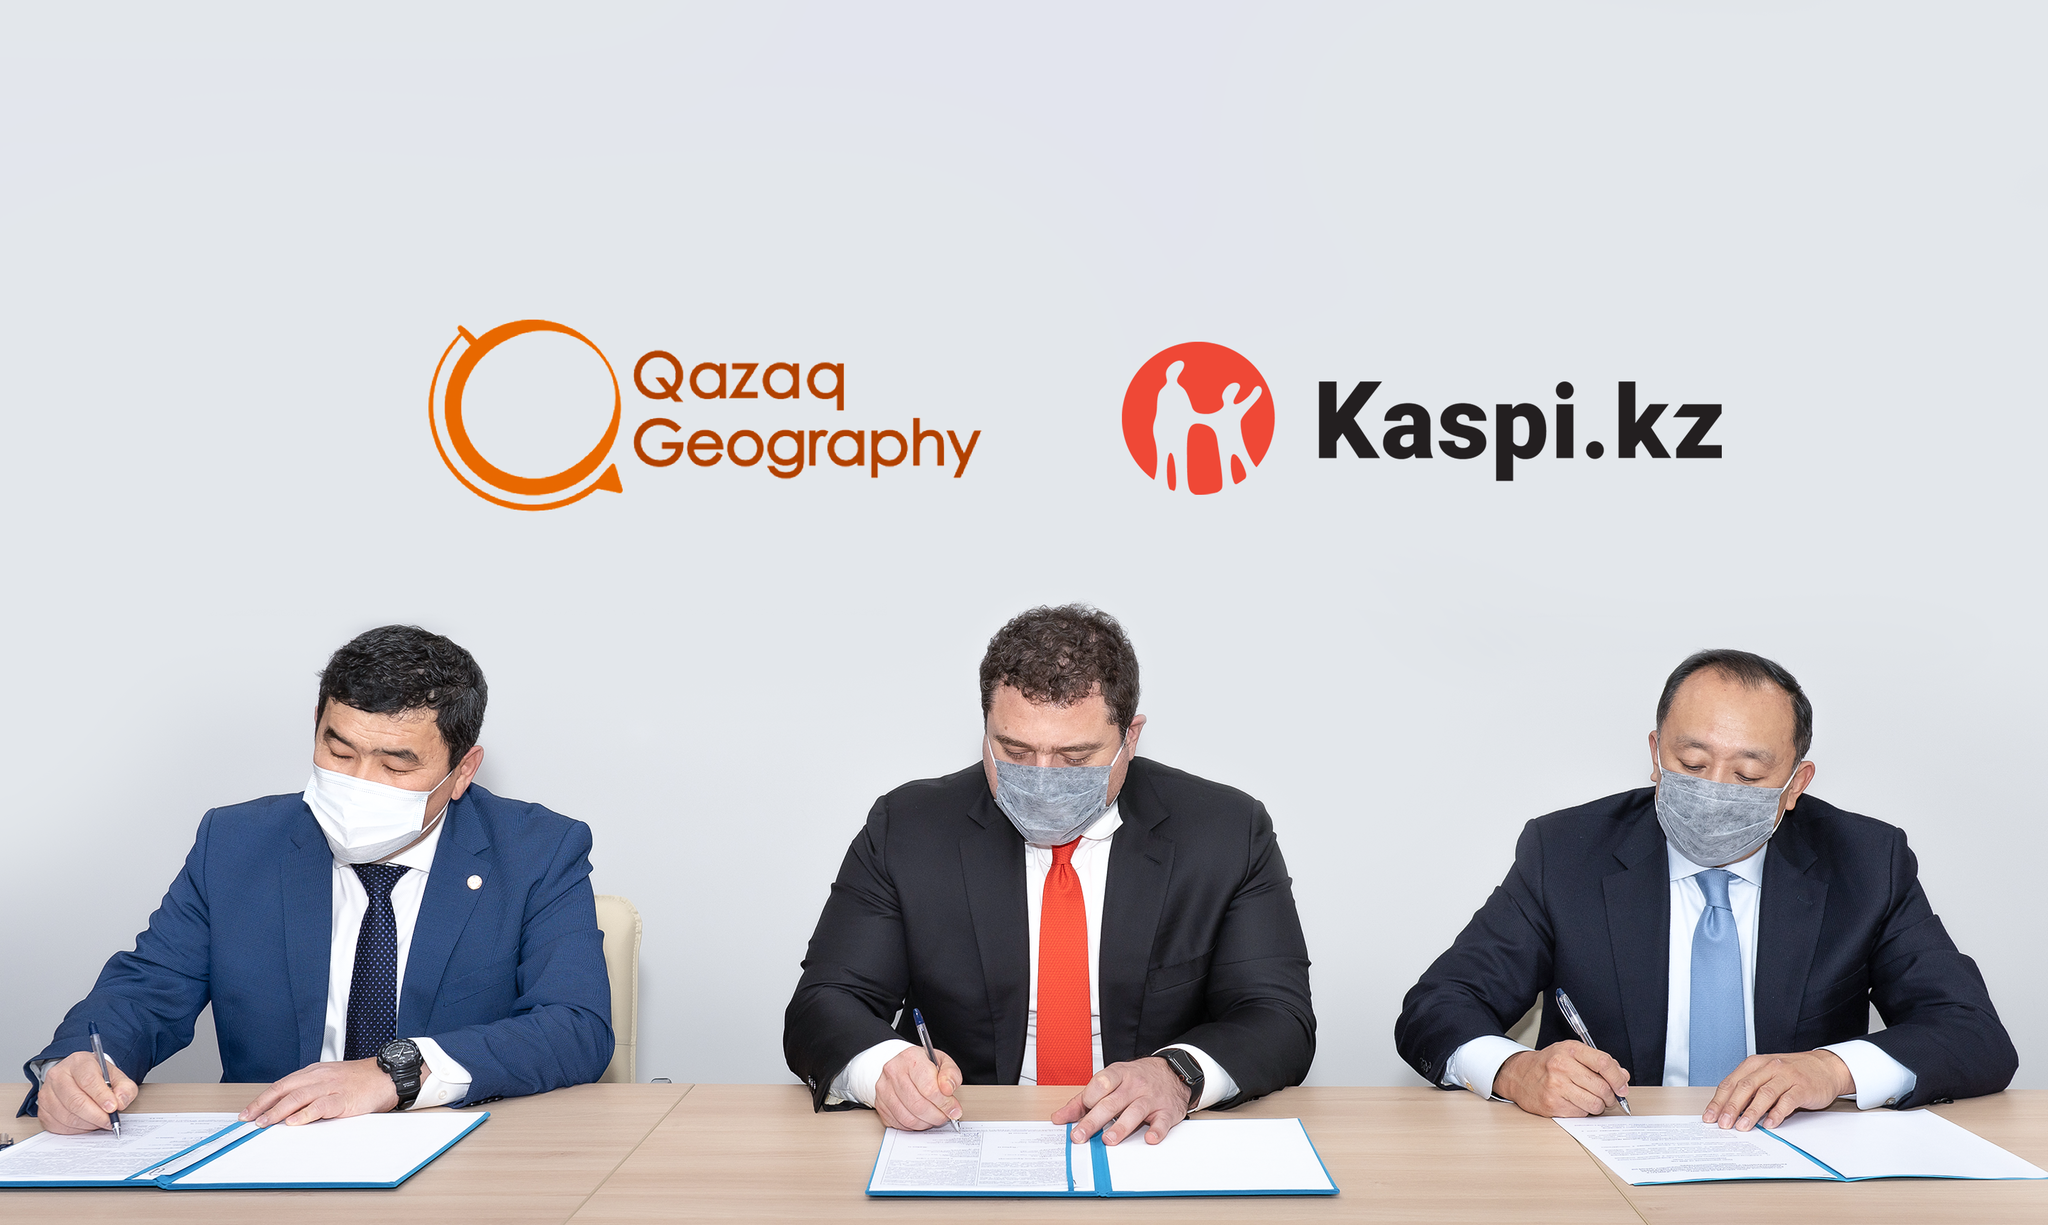 Kaspi.kz поддержит развитие национальных природных парков Казахстана